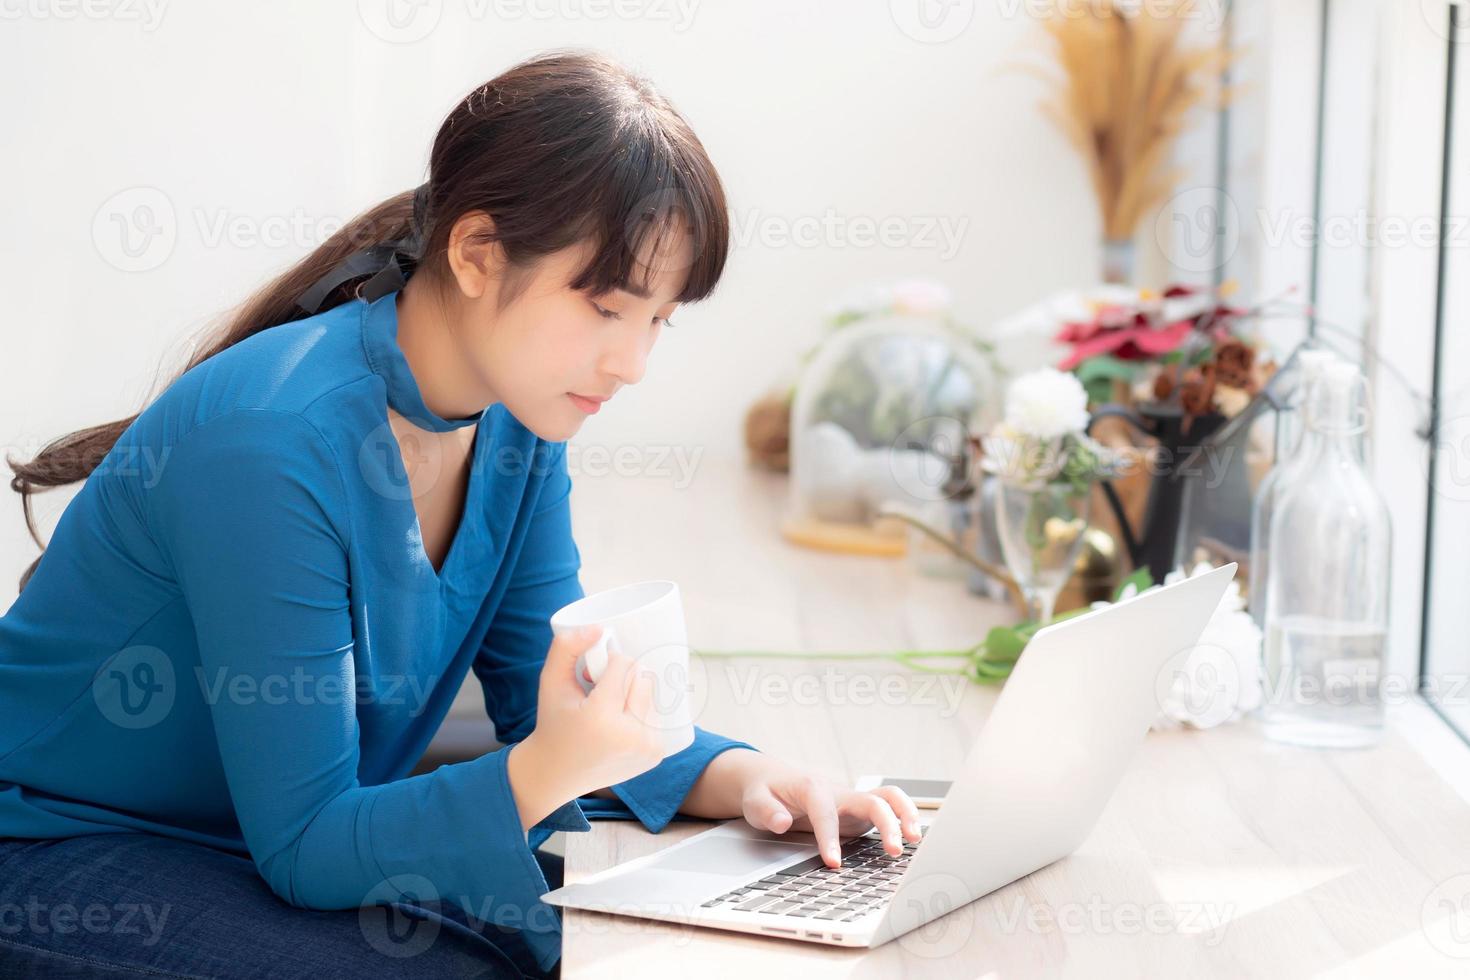 hermosa joven mujer asiática independiente sonriendo trabajando y en una computadora portátil en la cafetería de escritorio con una chica asiática profesional que usa un cuaderno y bebe café, concepto de negocios y estilo de vida. foto